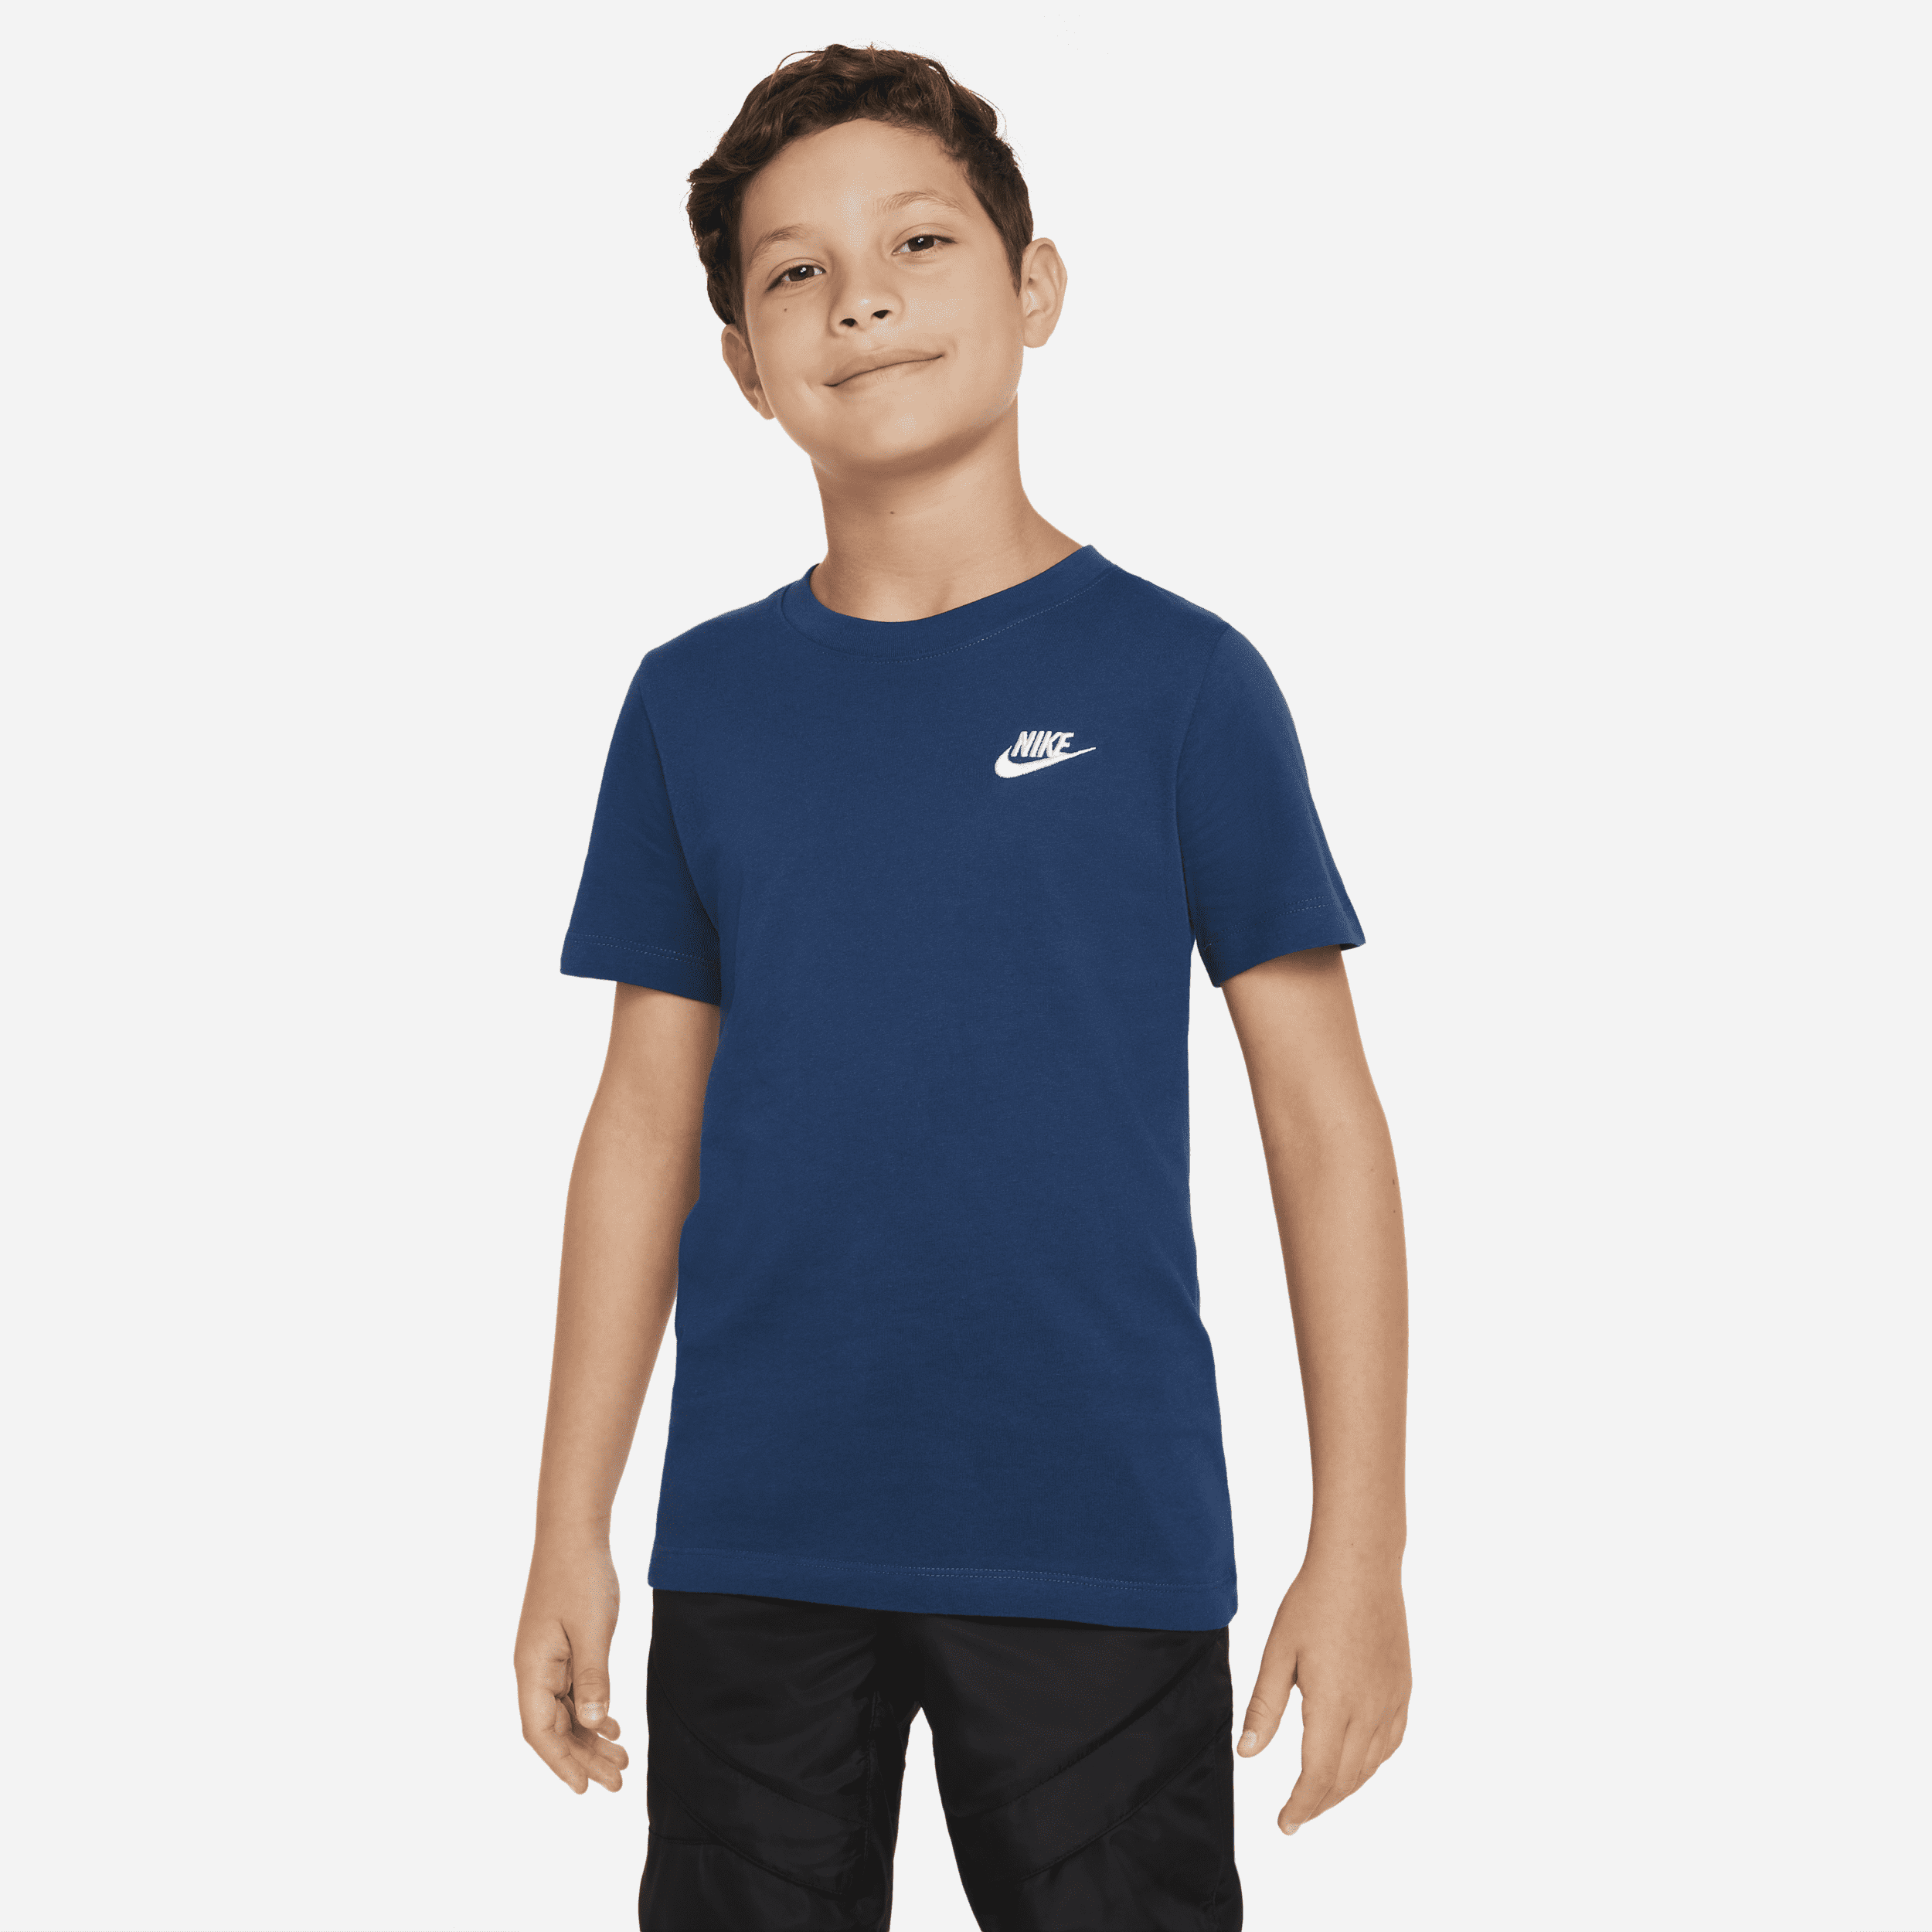 Nike Sportswear Big Kids' T-shirt In Blue